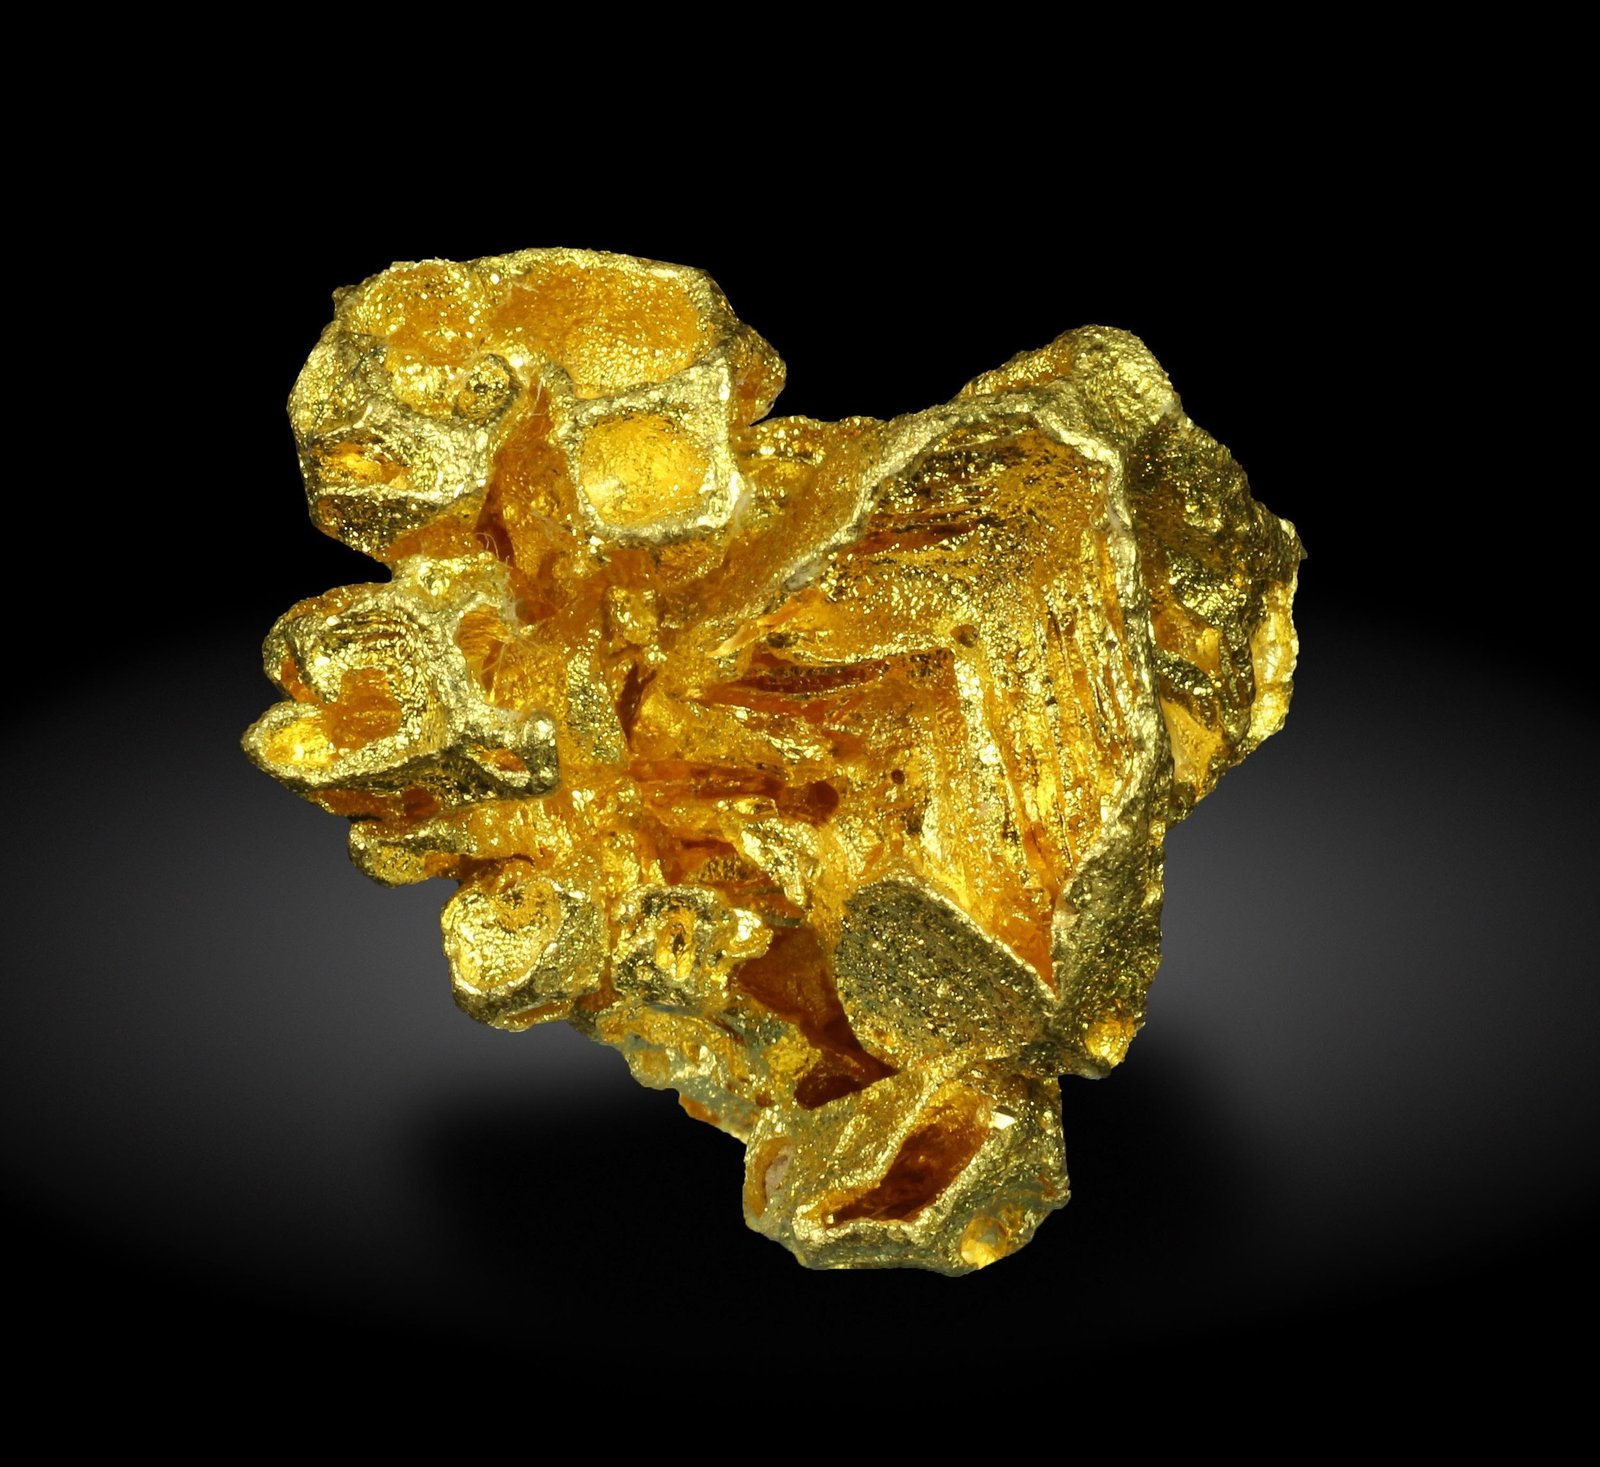 specimens/s_imagesAG8/Gold-TM88AG8_9296_f.jpg